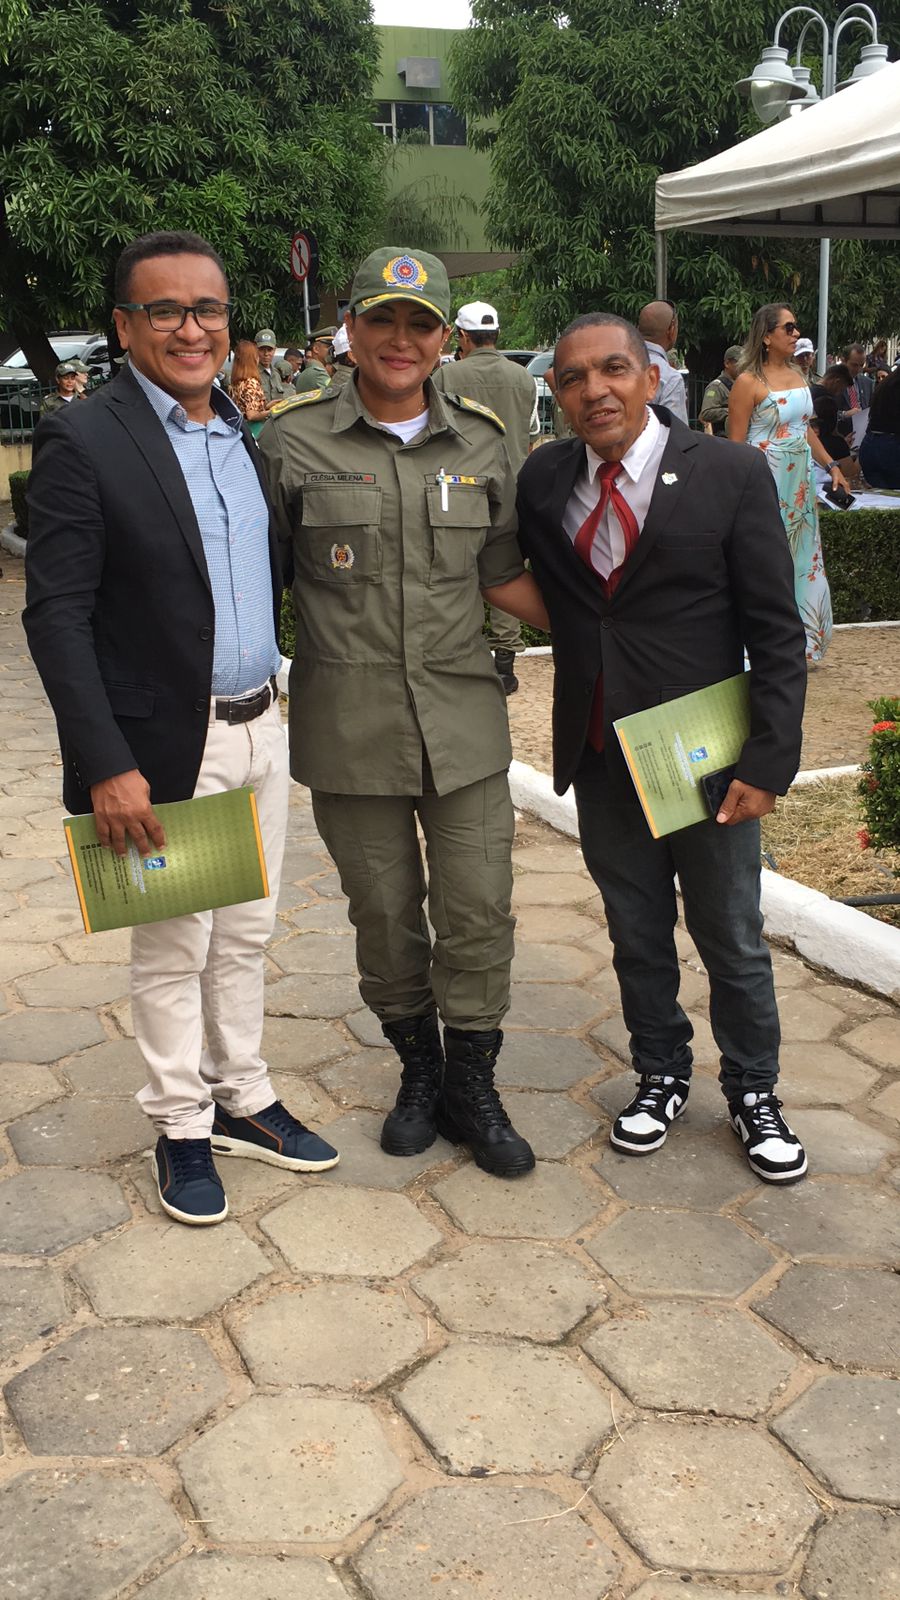 Walberte Dourado e Tony Silva, da O DIA TV, recebem homenagem da Polícia Militar